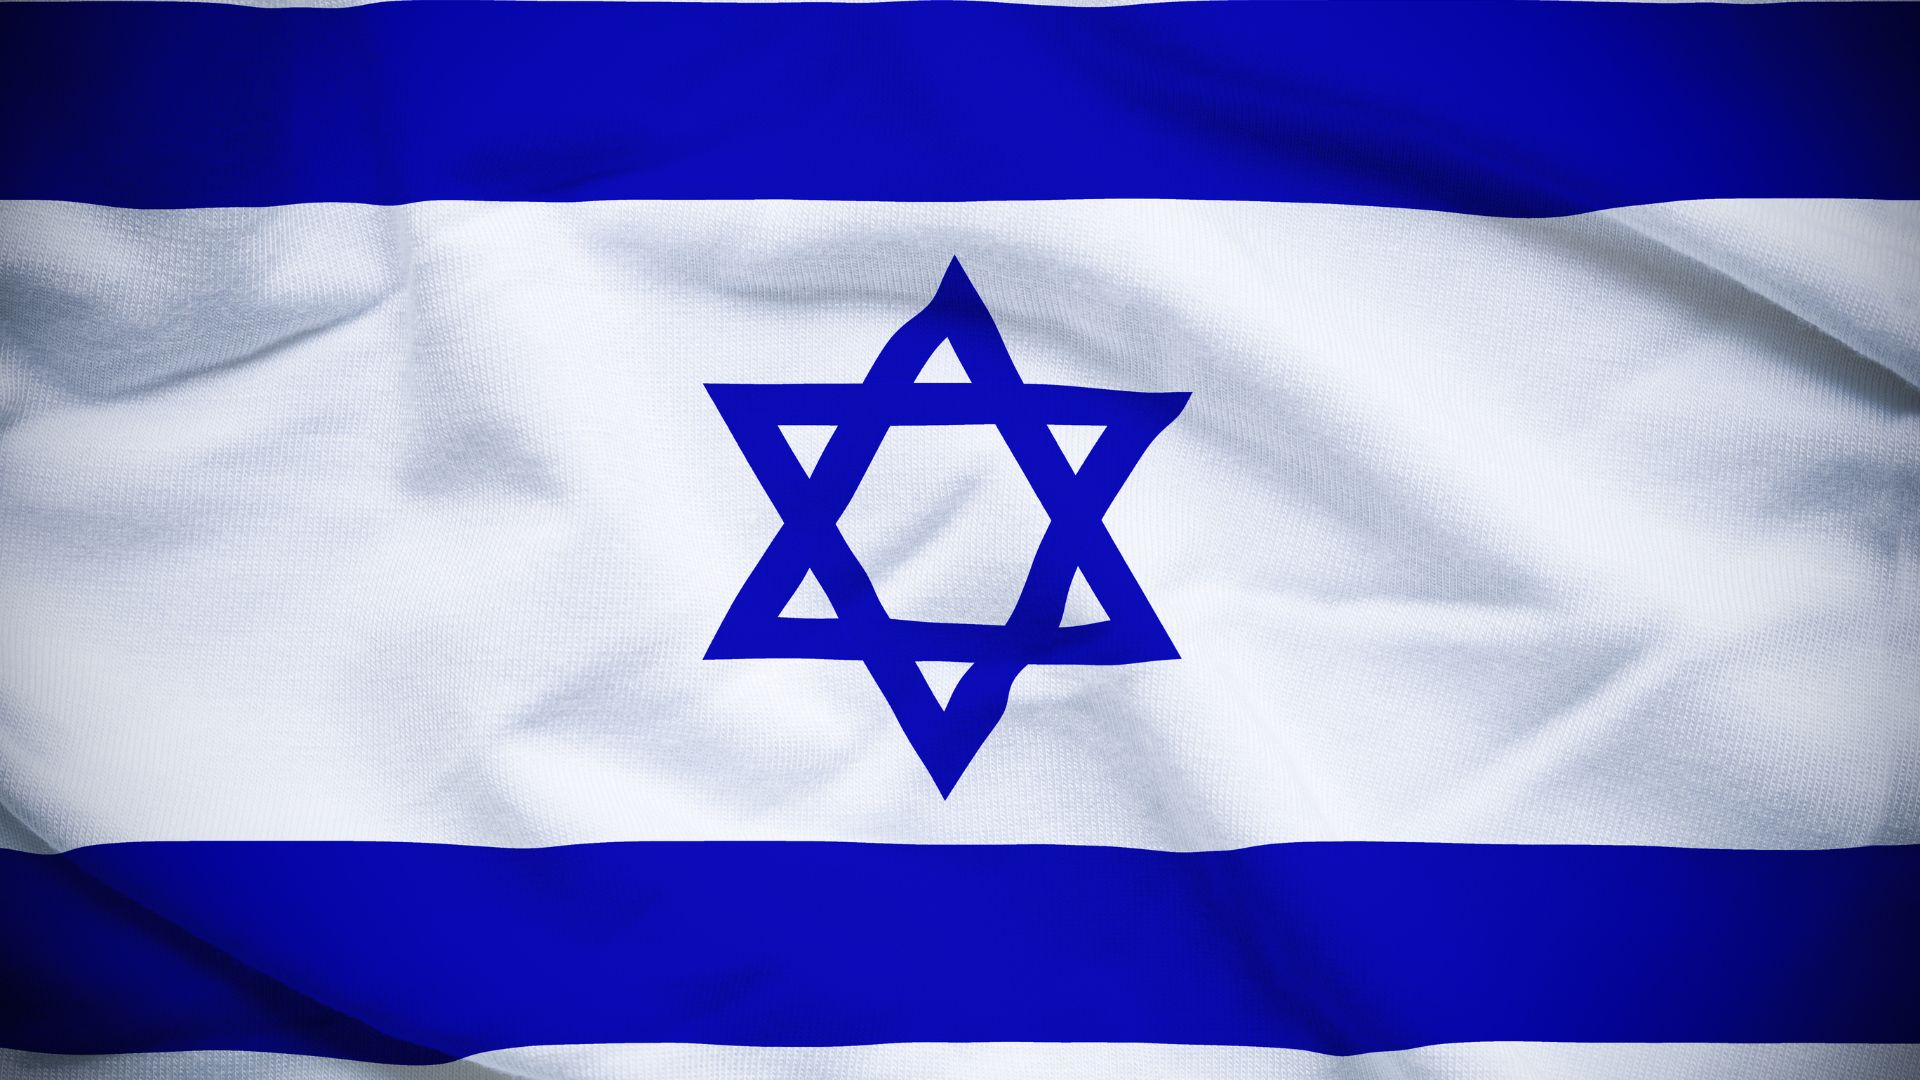 A bandeira de Israel mostra uma Estrela de David na cor azul em um fundo branco, entre duas faixas azuis horizontais.